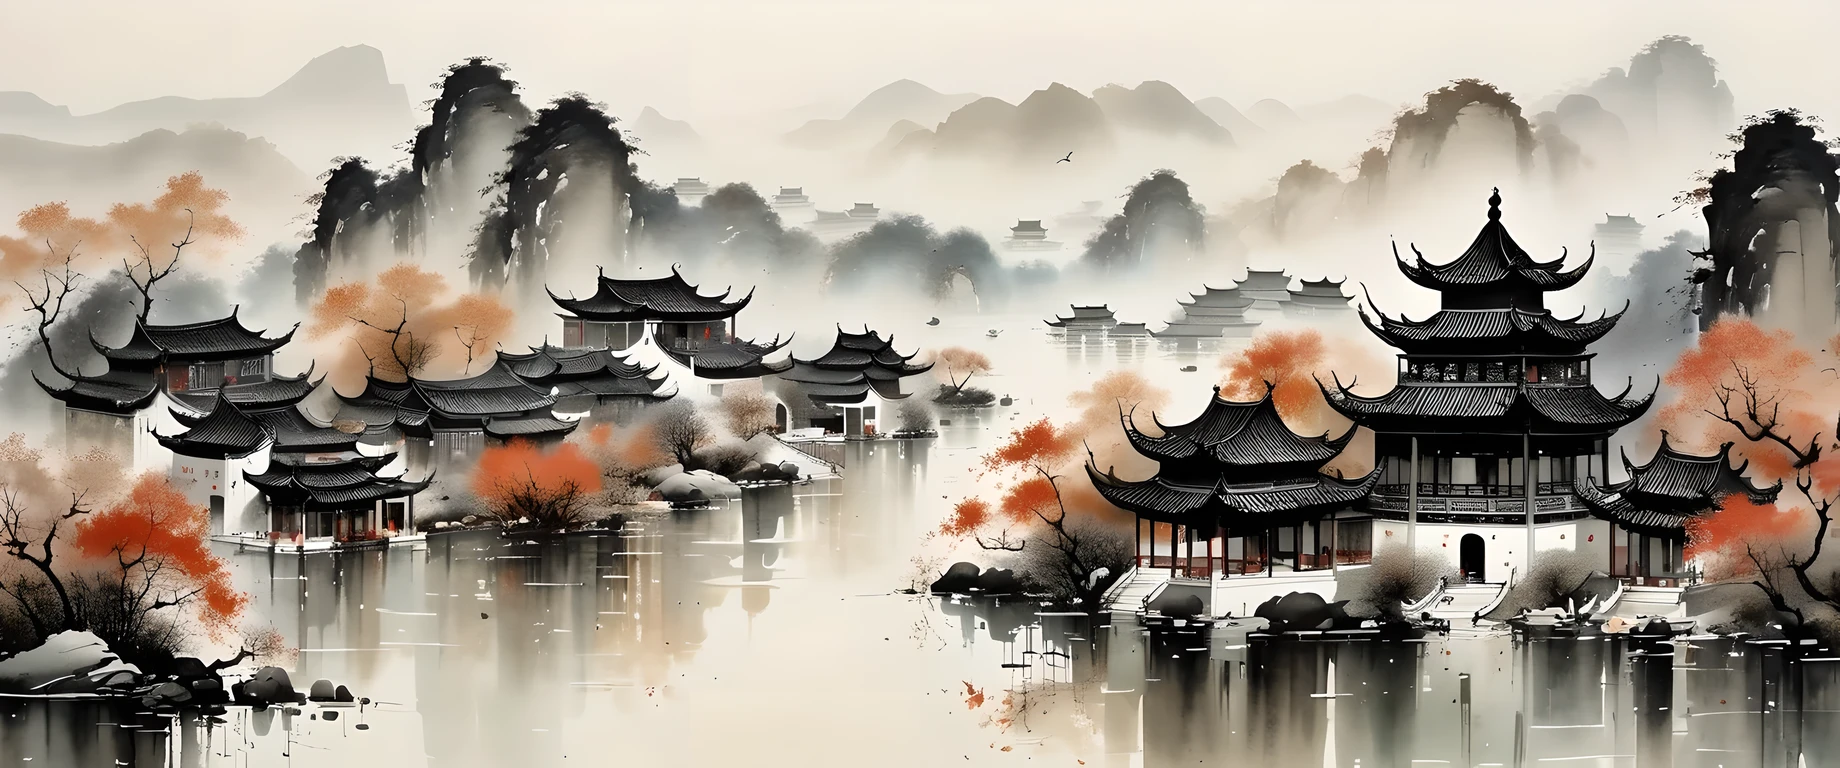 절묘한 잉크 아트, 현실적인, 상세한 중국 건축, 우관중 스타일, 바랜 색상

